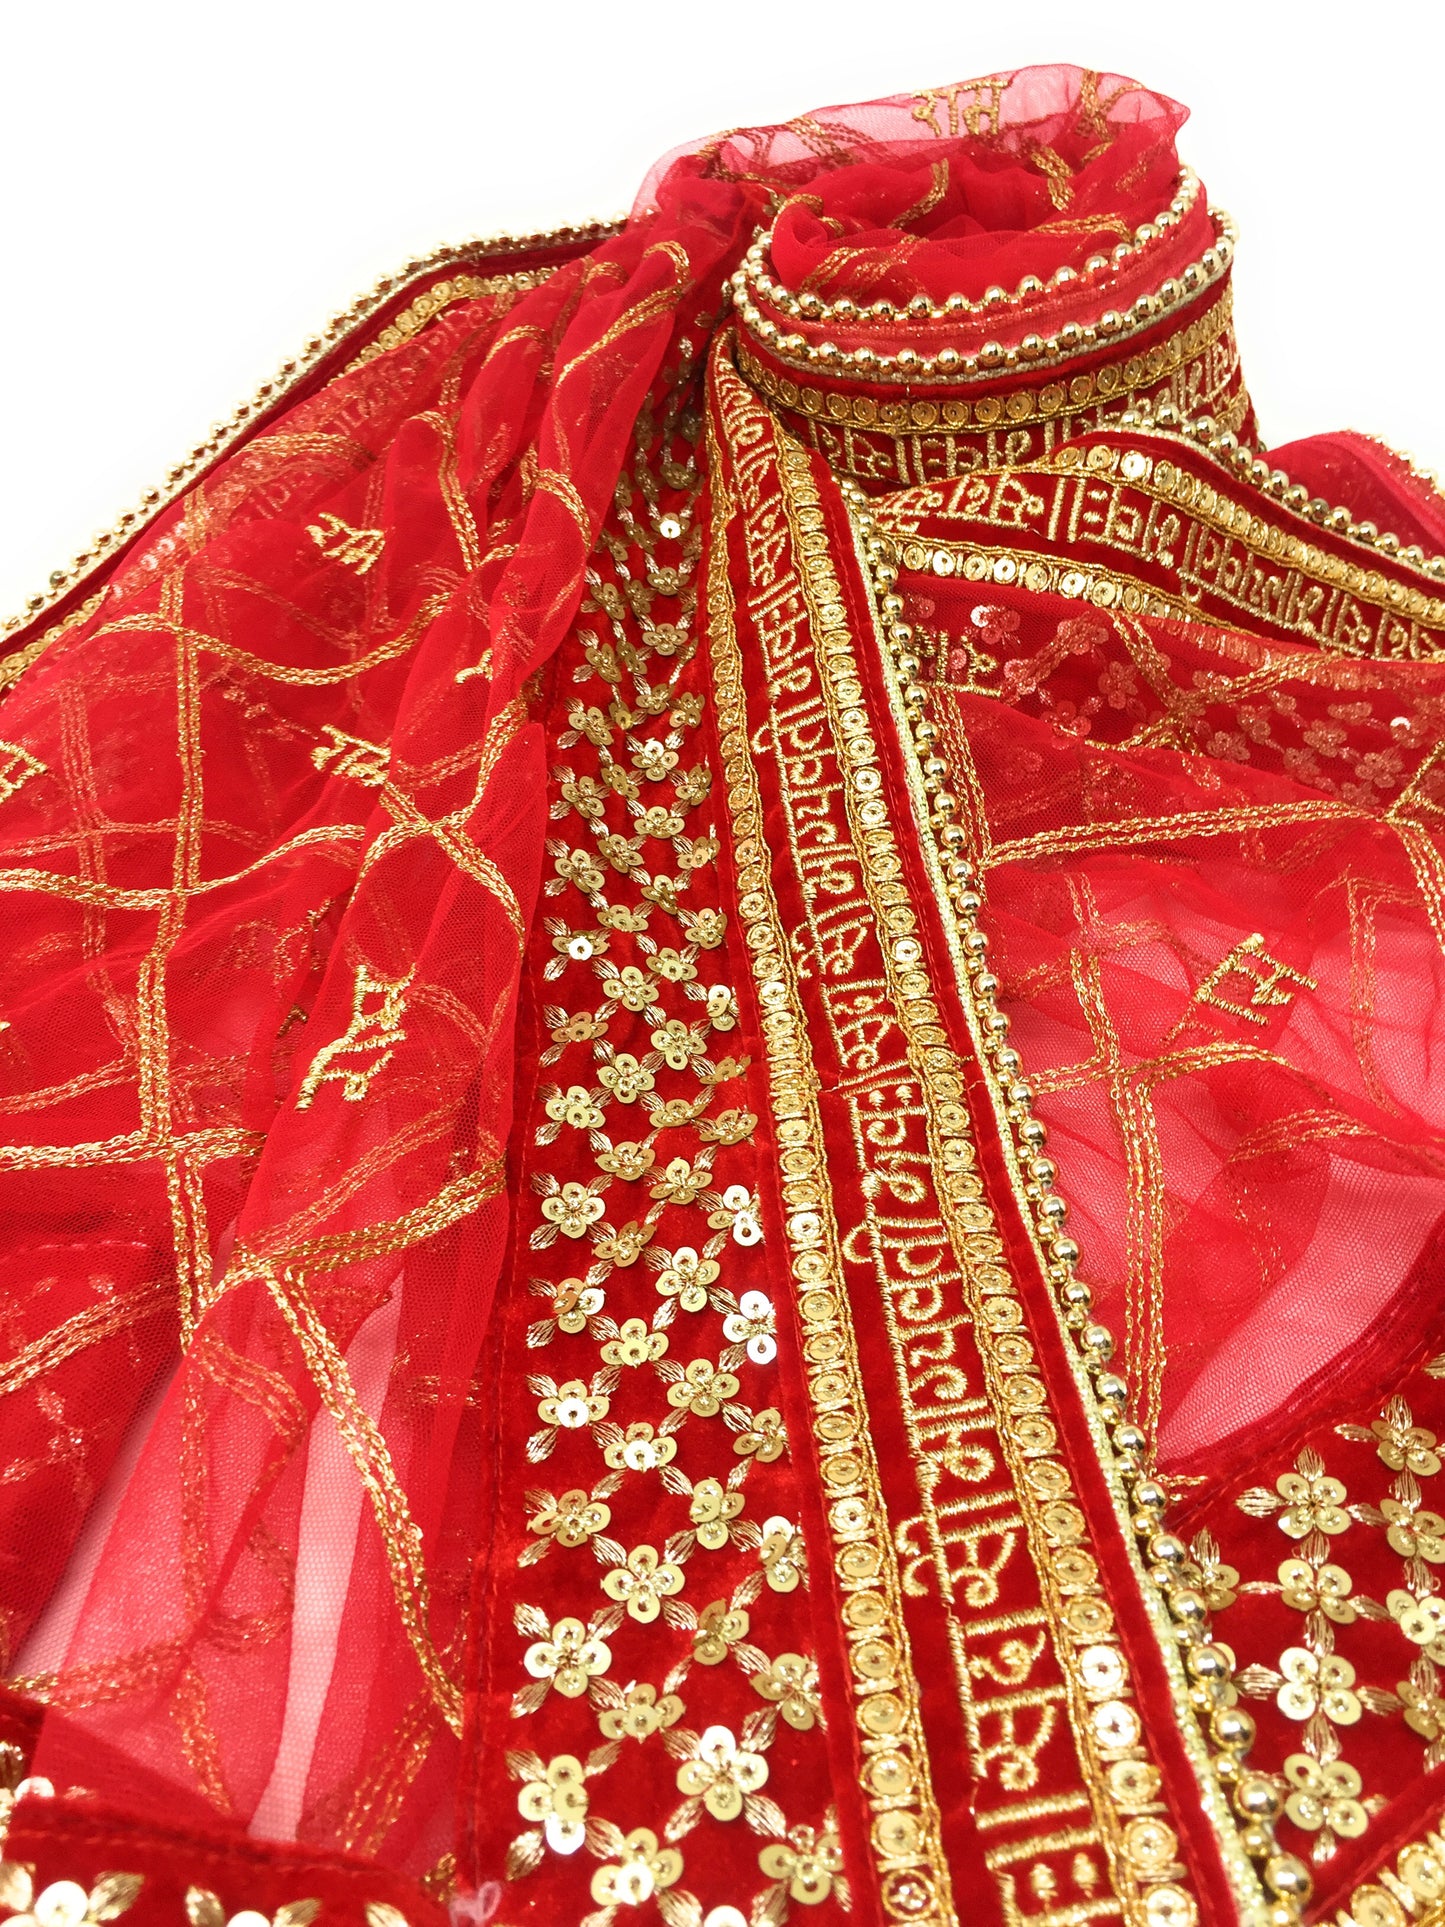 Customised Bridal Dupatta - Sada Saubhagyavati Chunri personalised with name messege